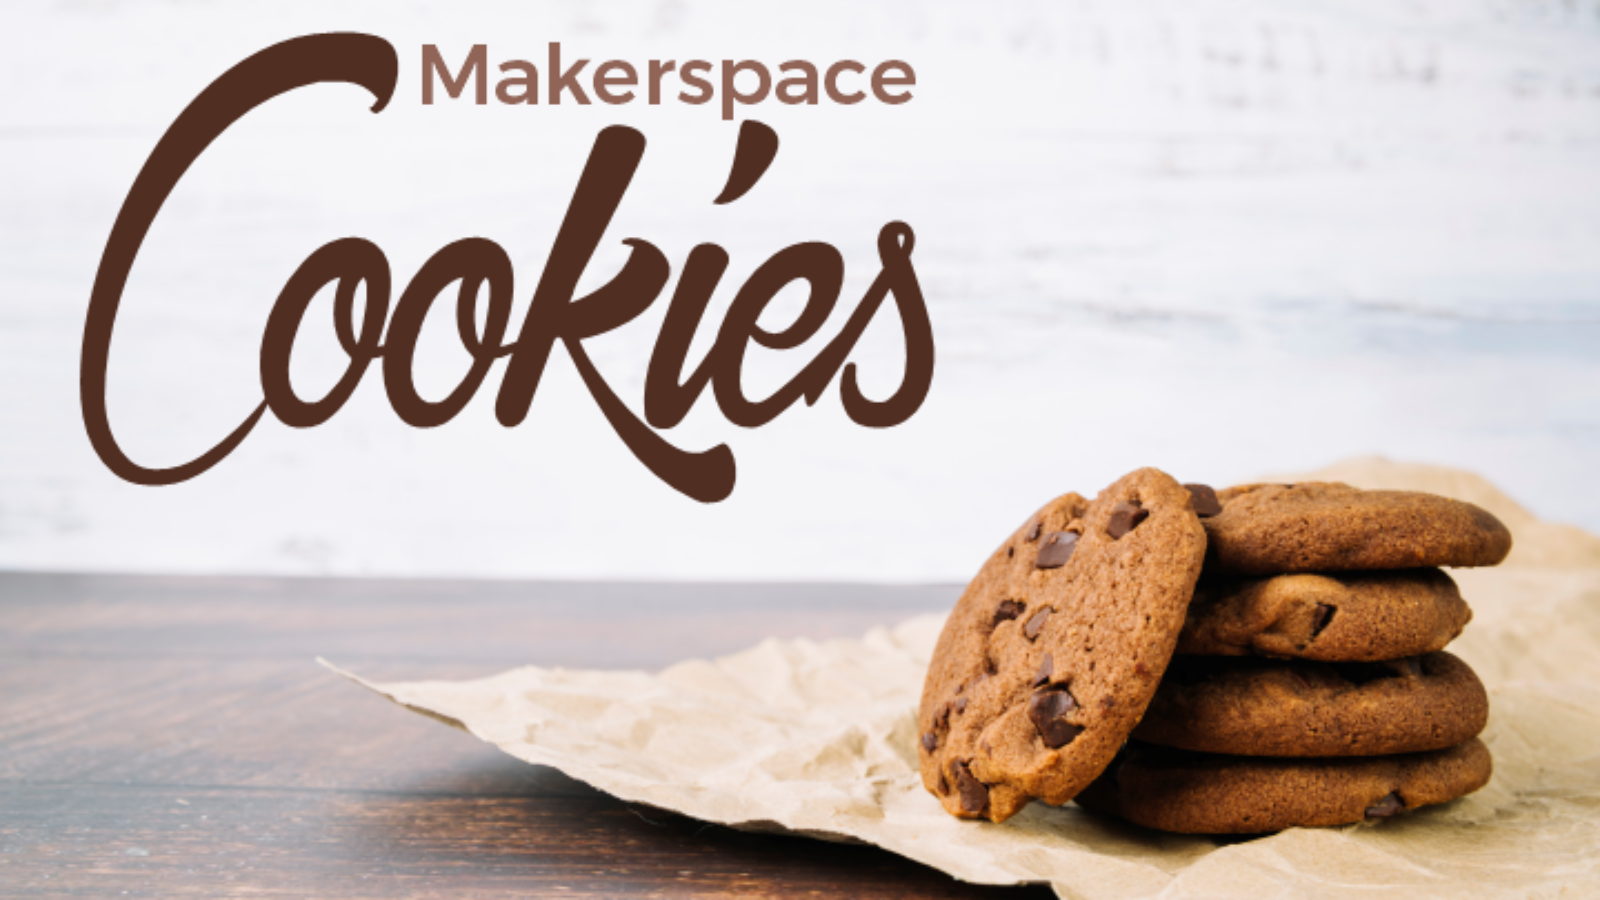 Makerspace: Cookies